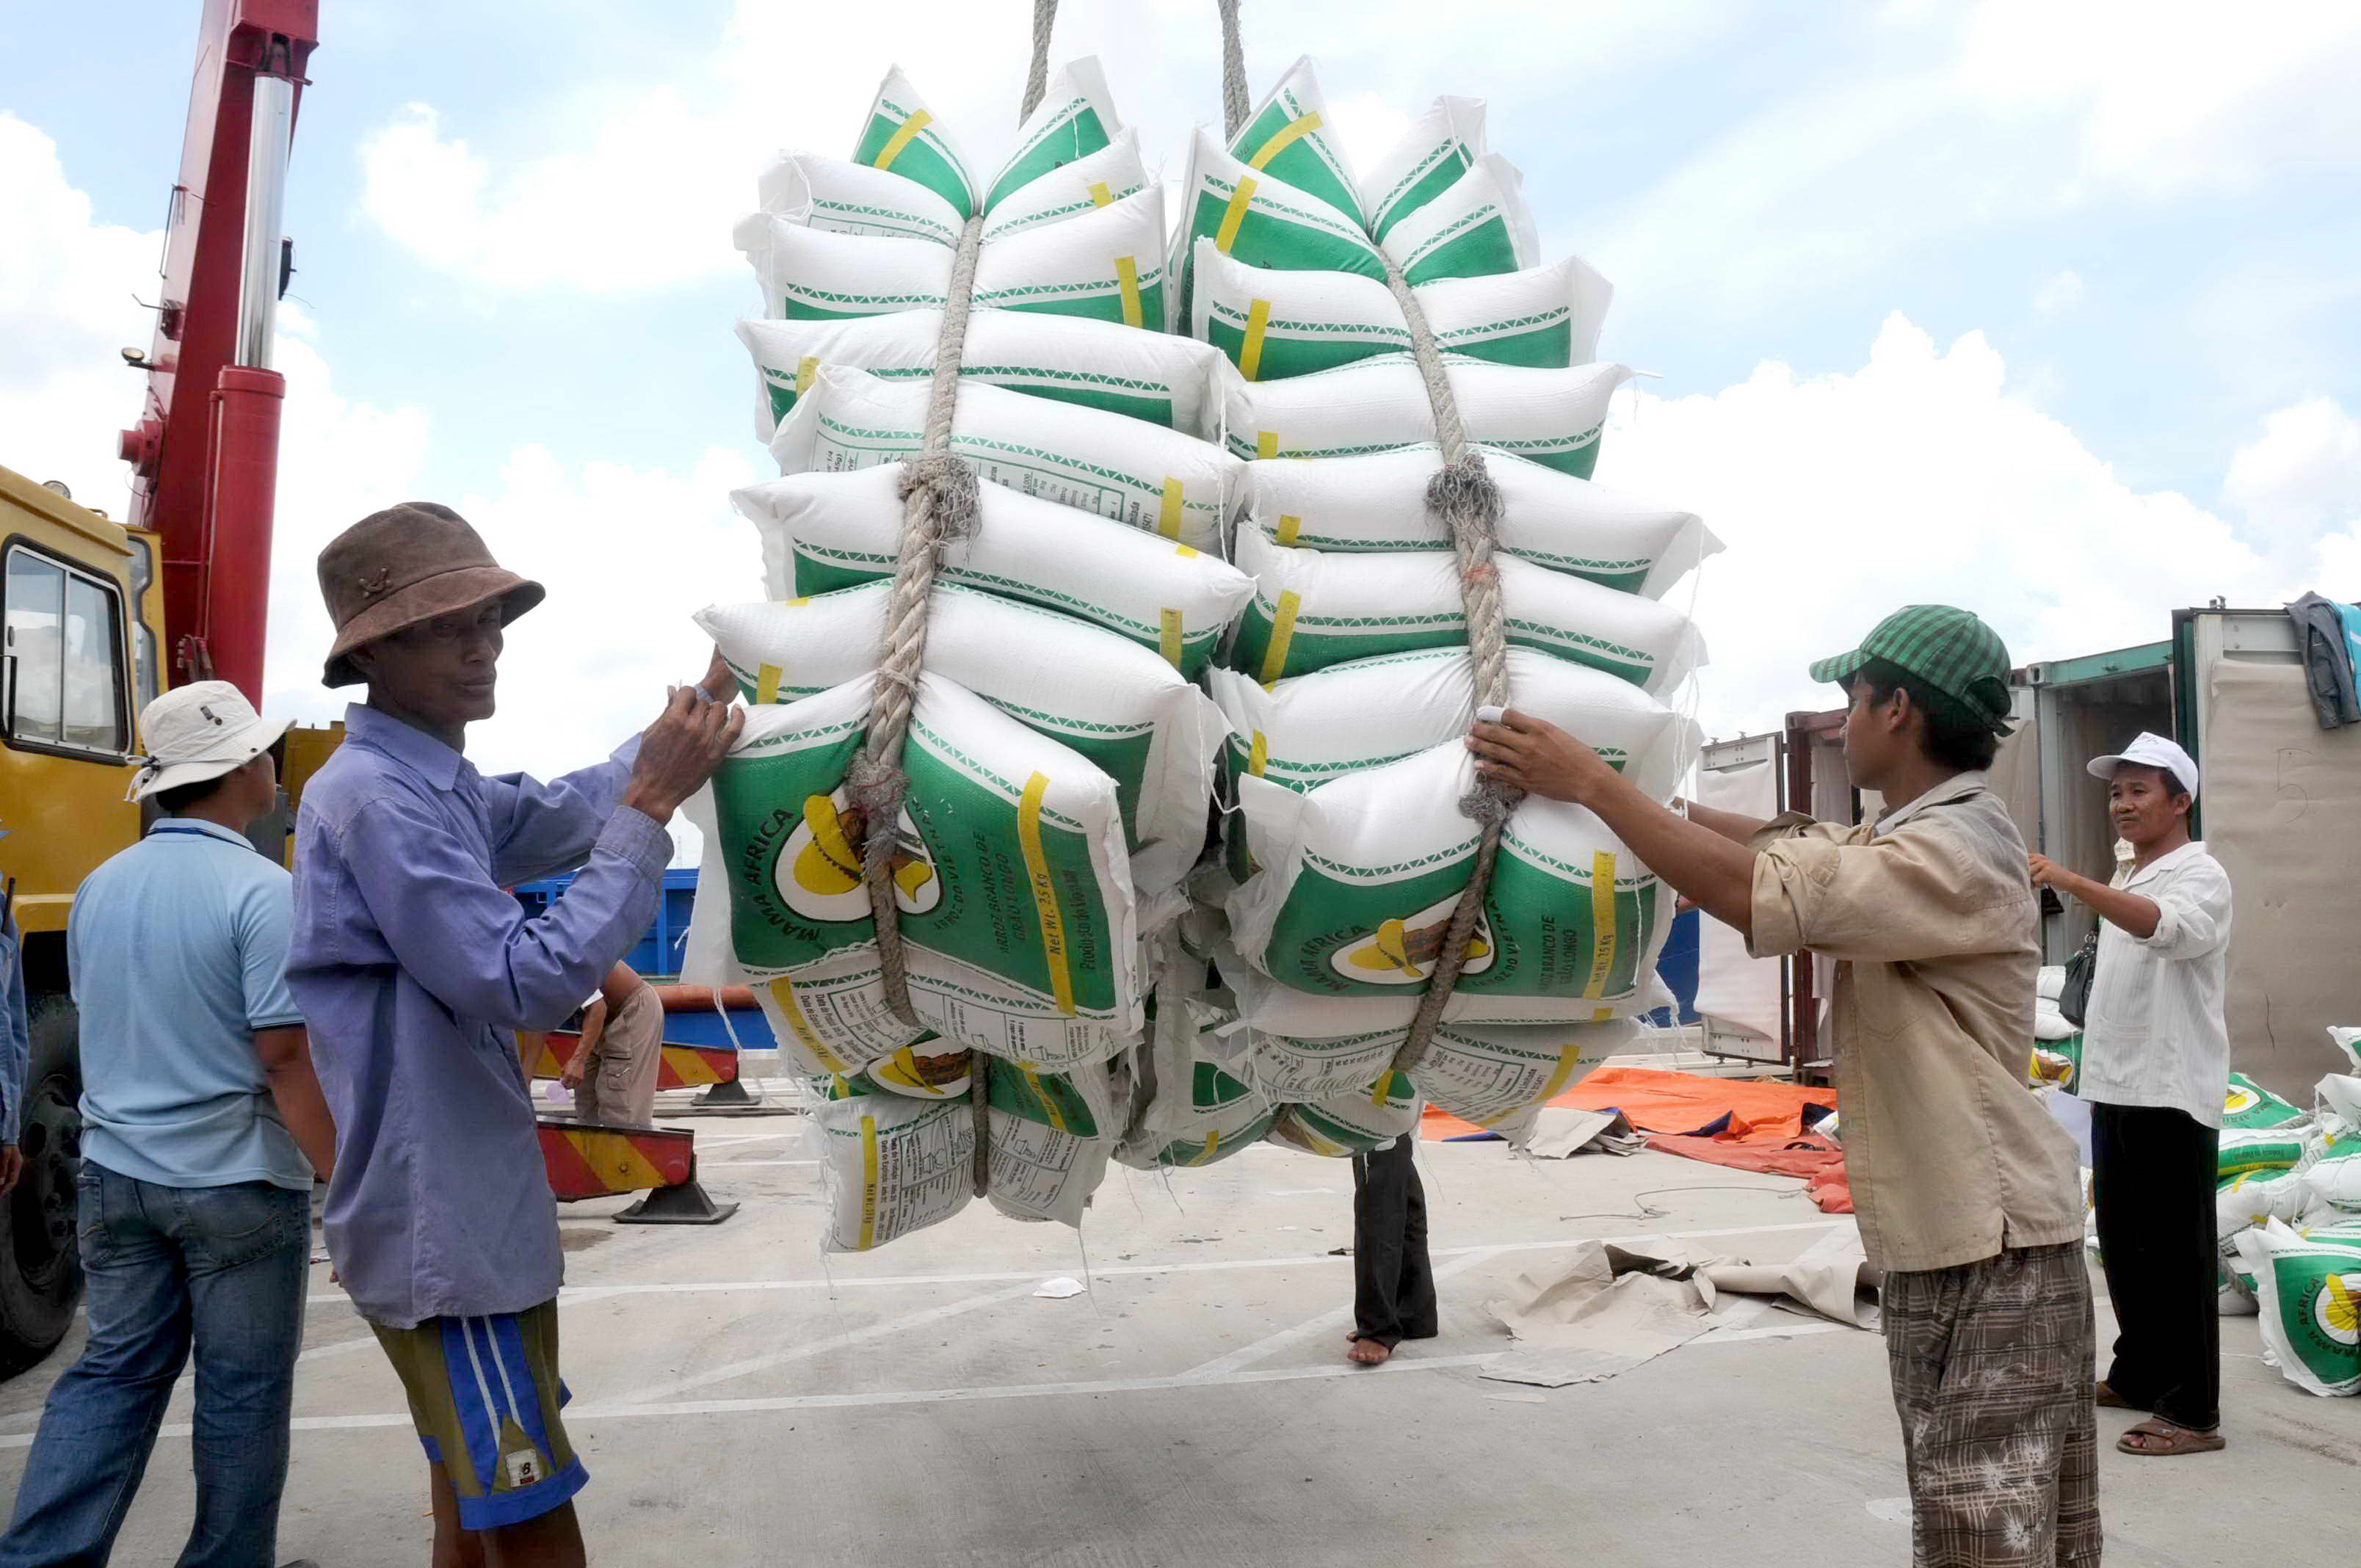 Trung Quốc vẫn là thị trường nhập khẩu gạo lớn nhất của VN - Ảnh: Diệp Đức Minh